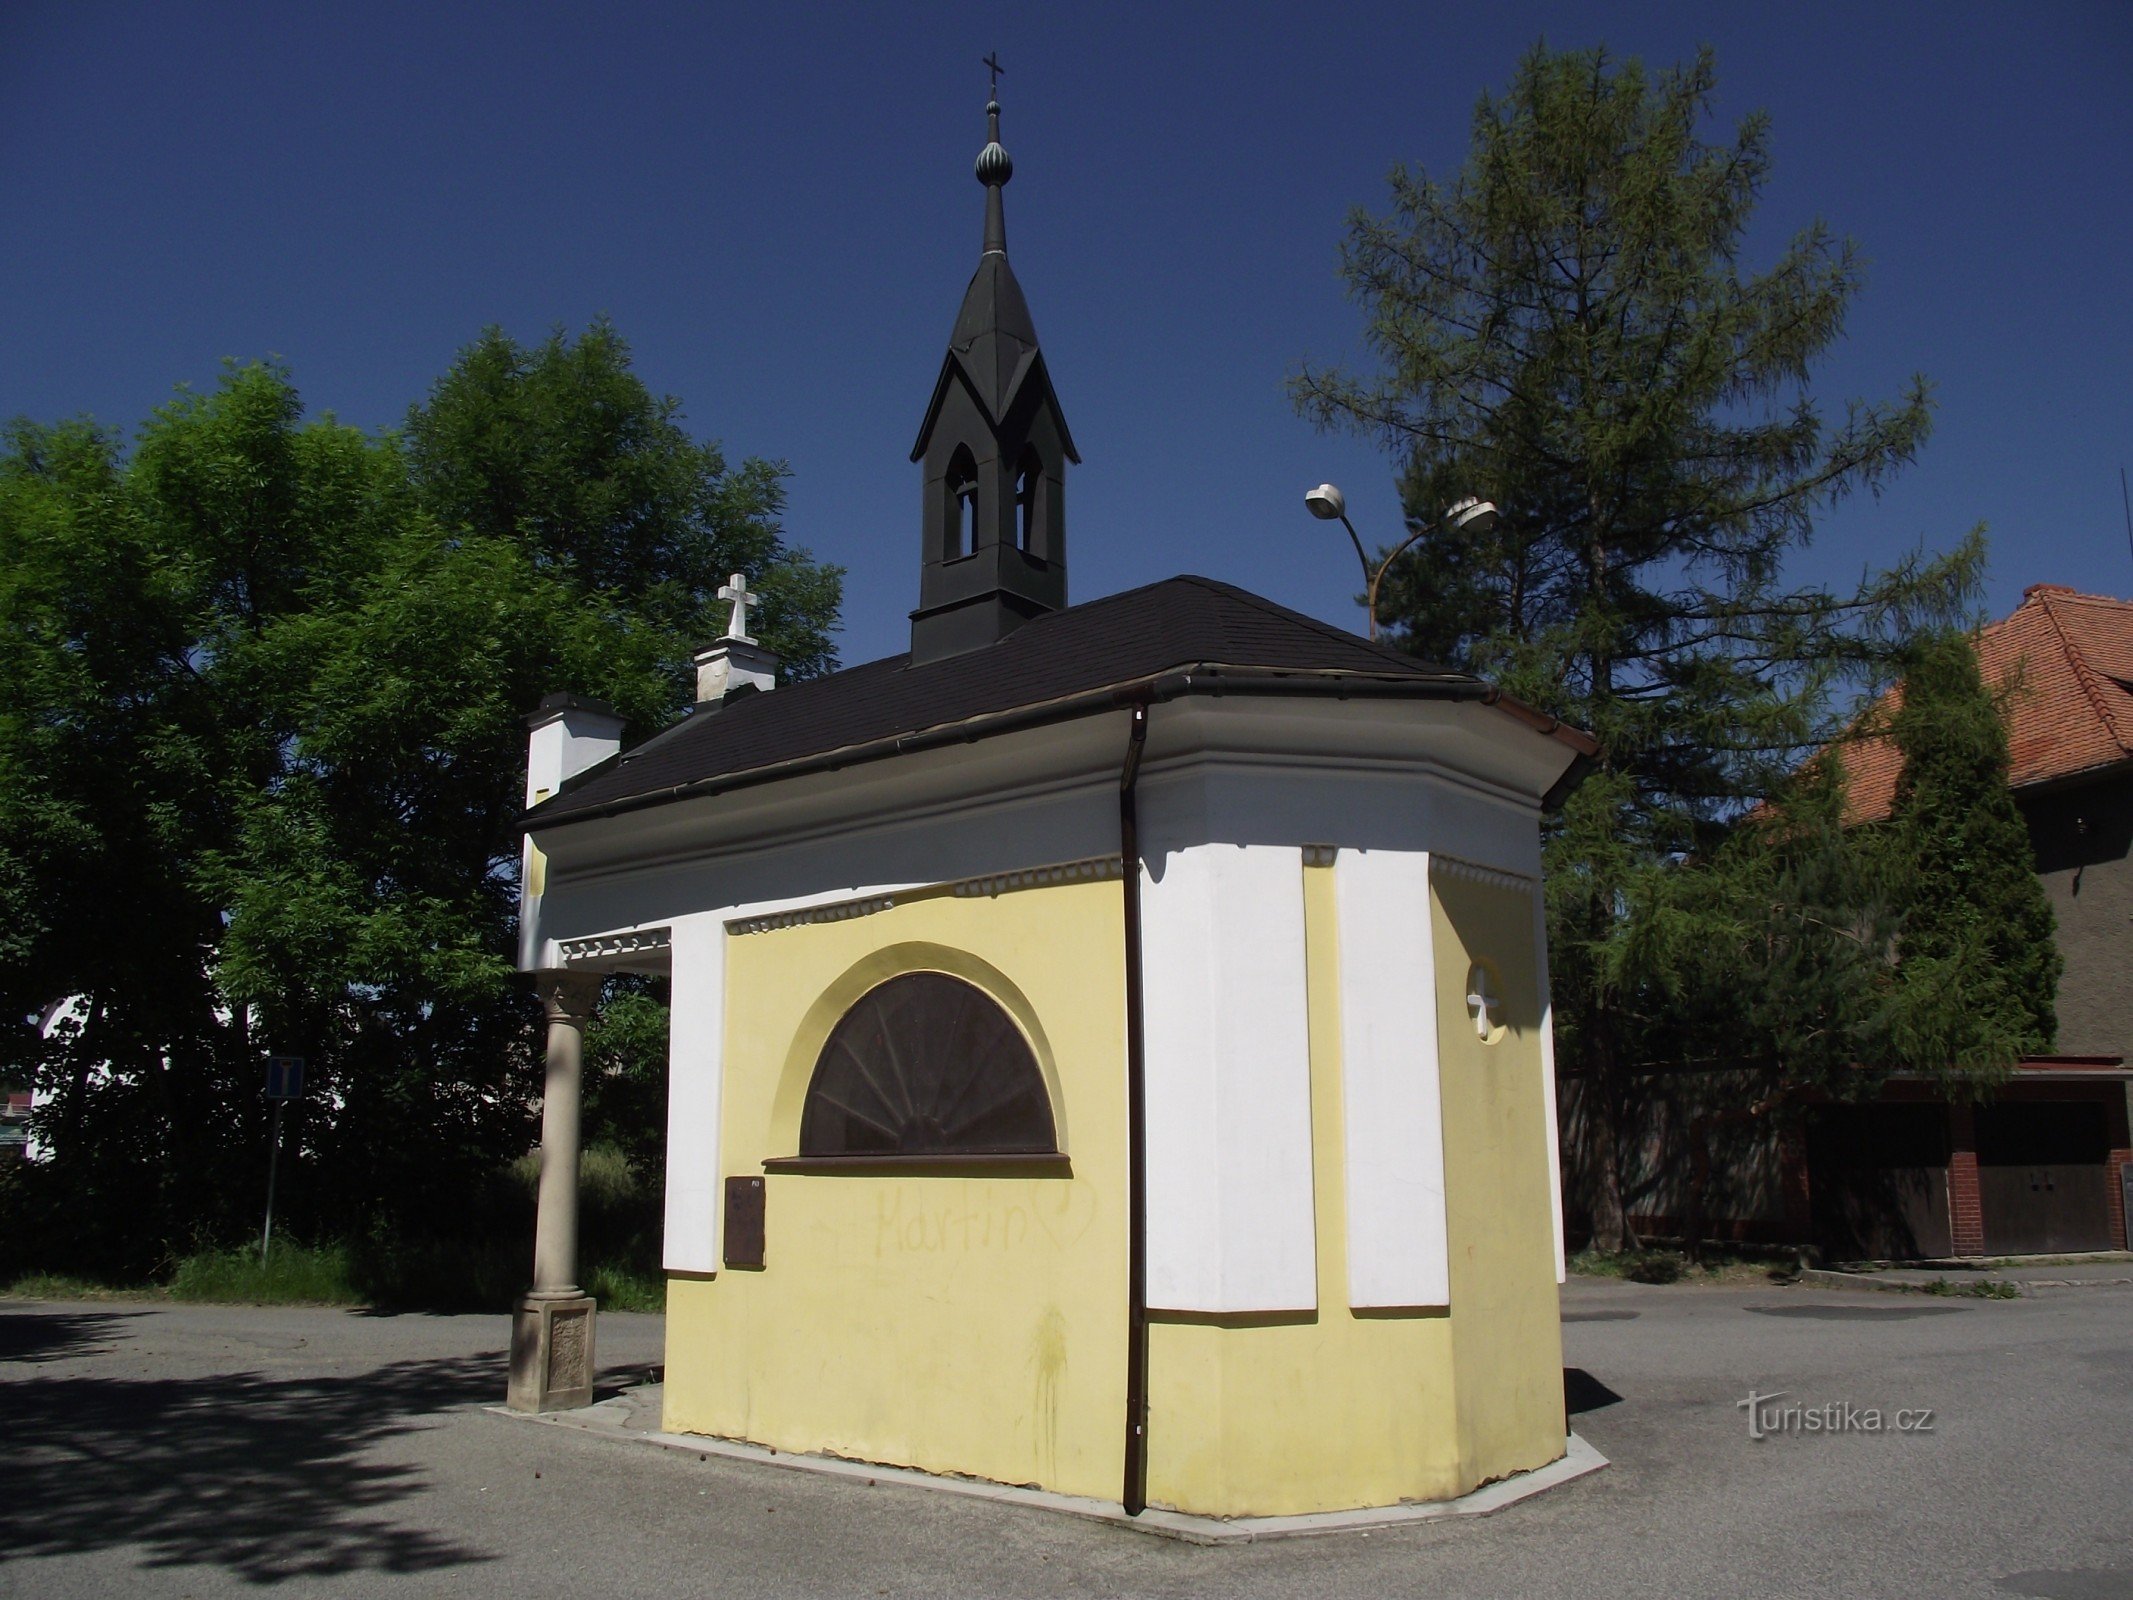 Valašské Meziříčí (Krásno) – chapel of St. Rocha